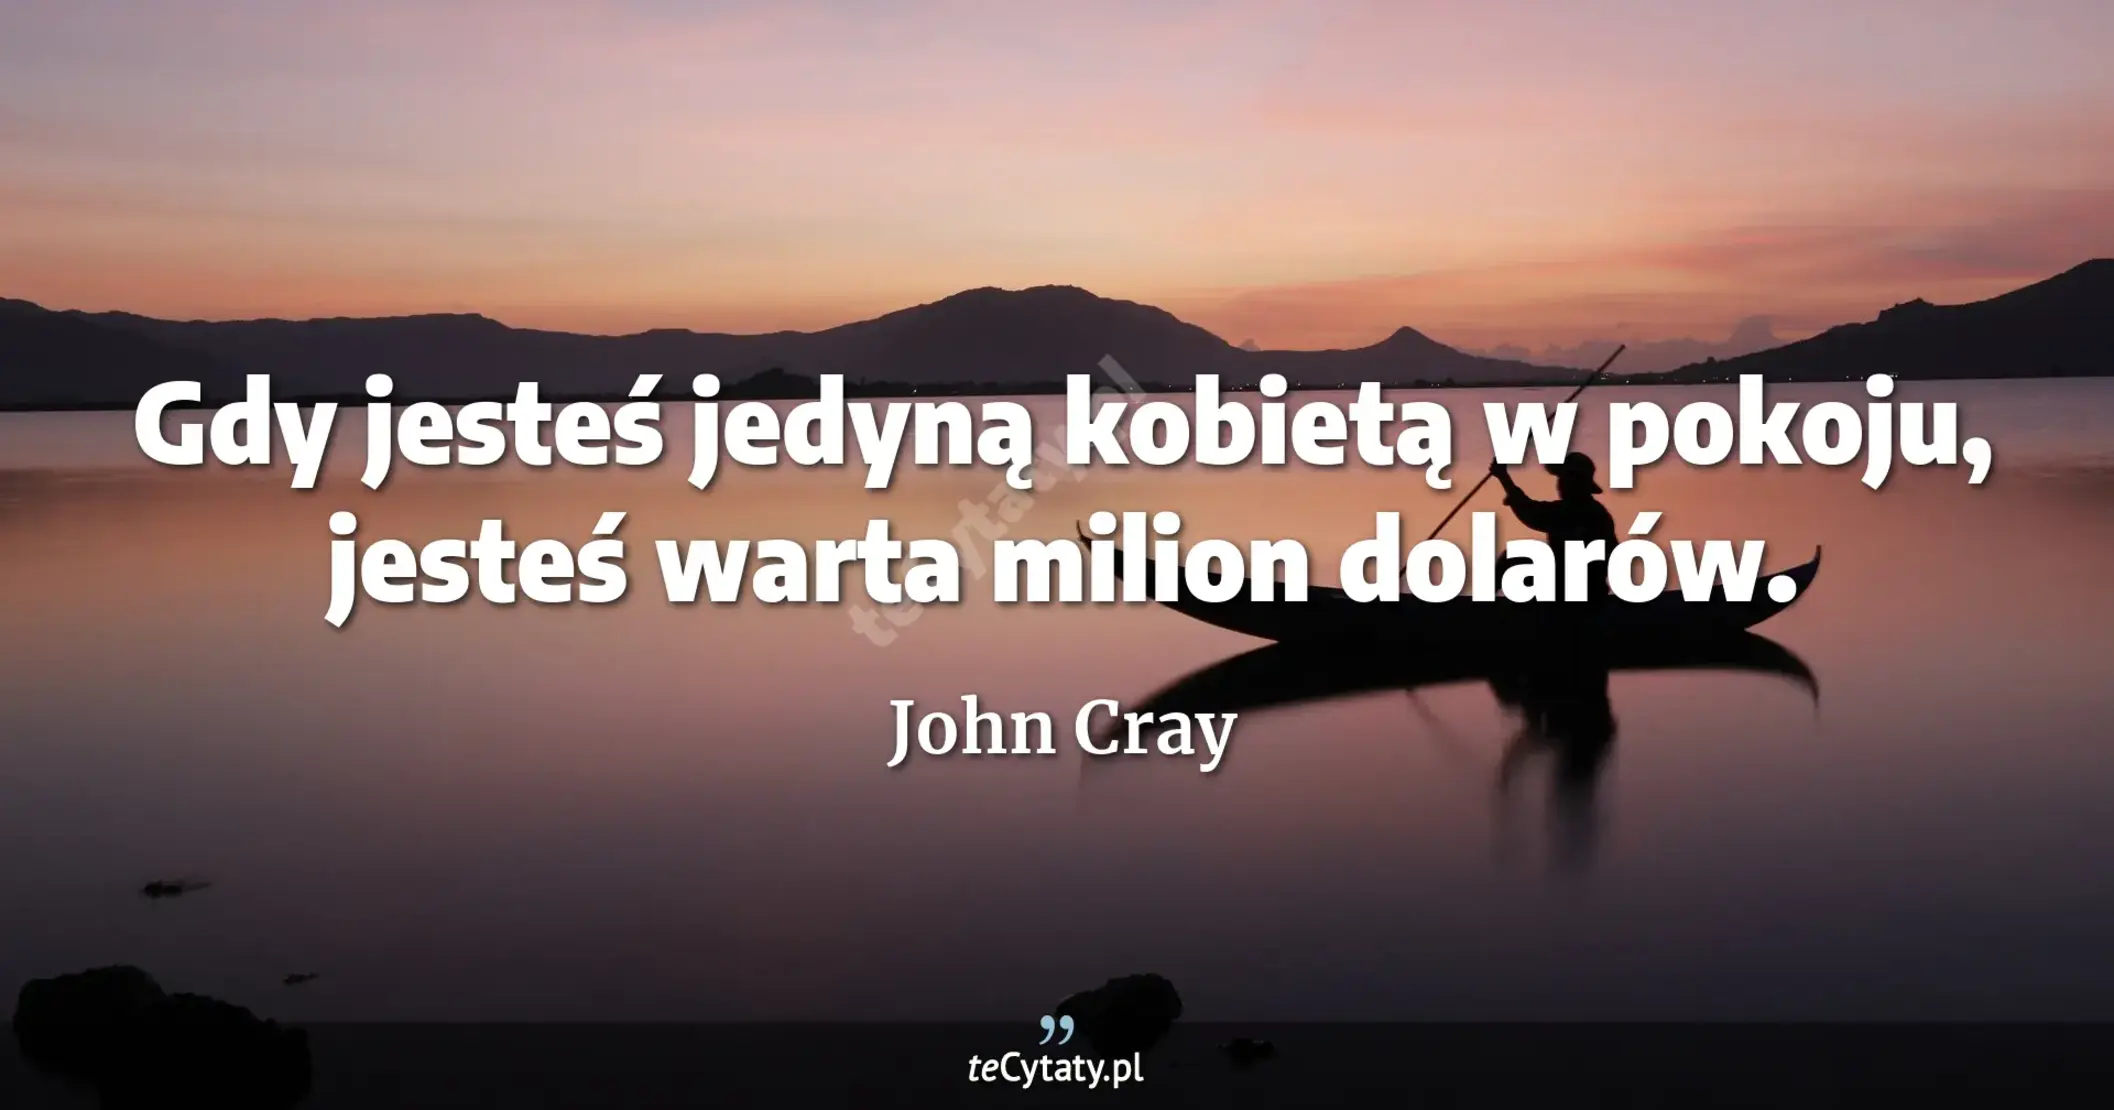 Gdy jesteś jedyną kobietą w pokoju, jesteś warta milion dolarów. - John Cray